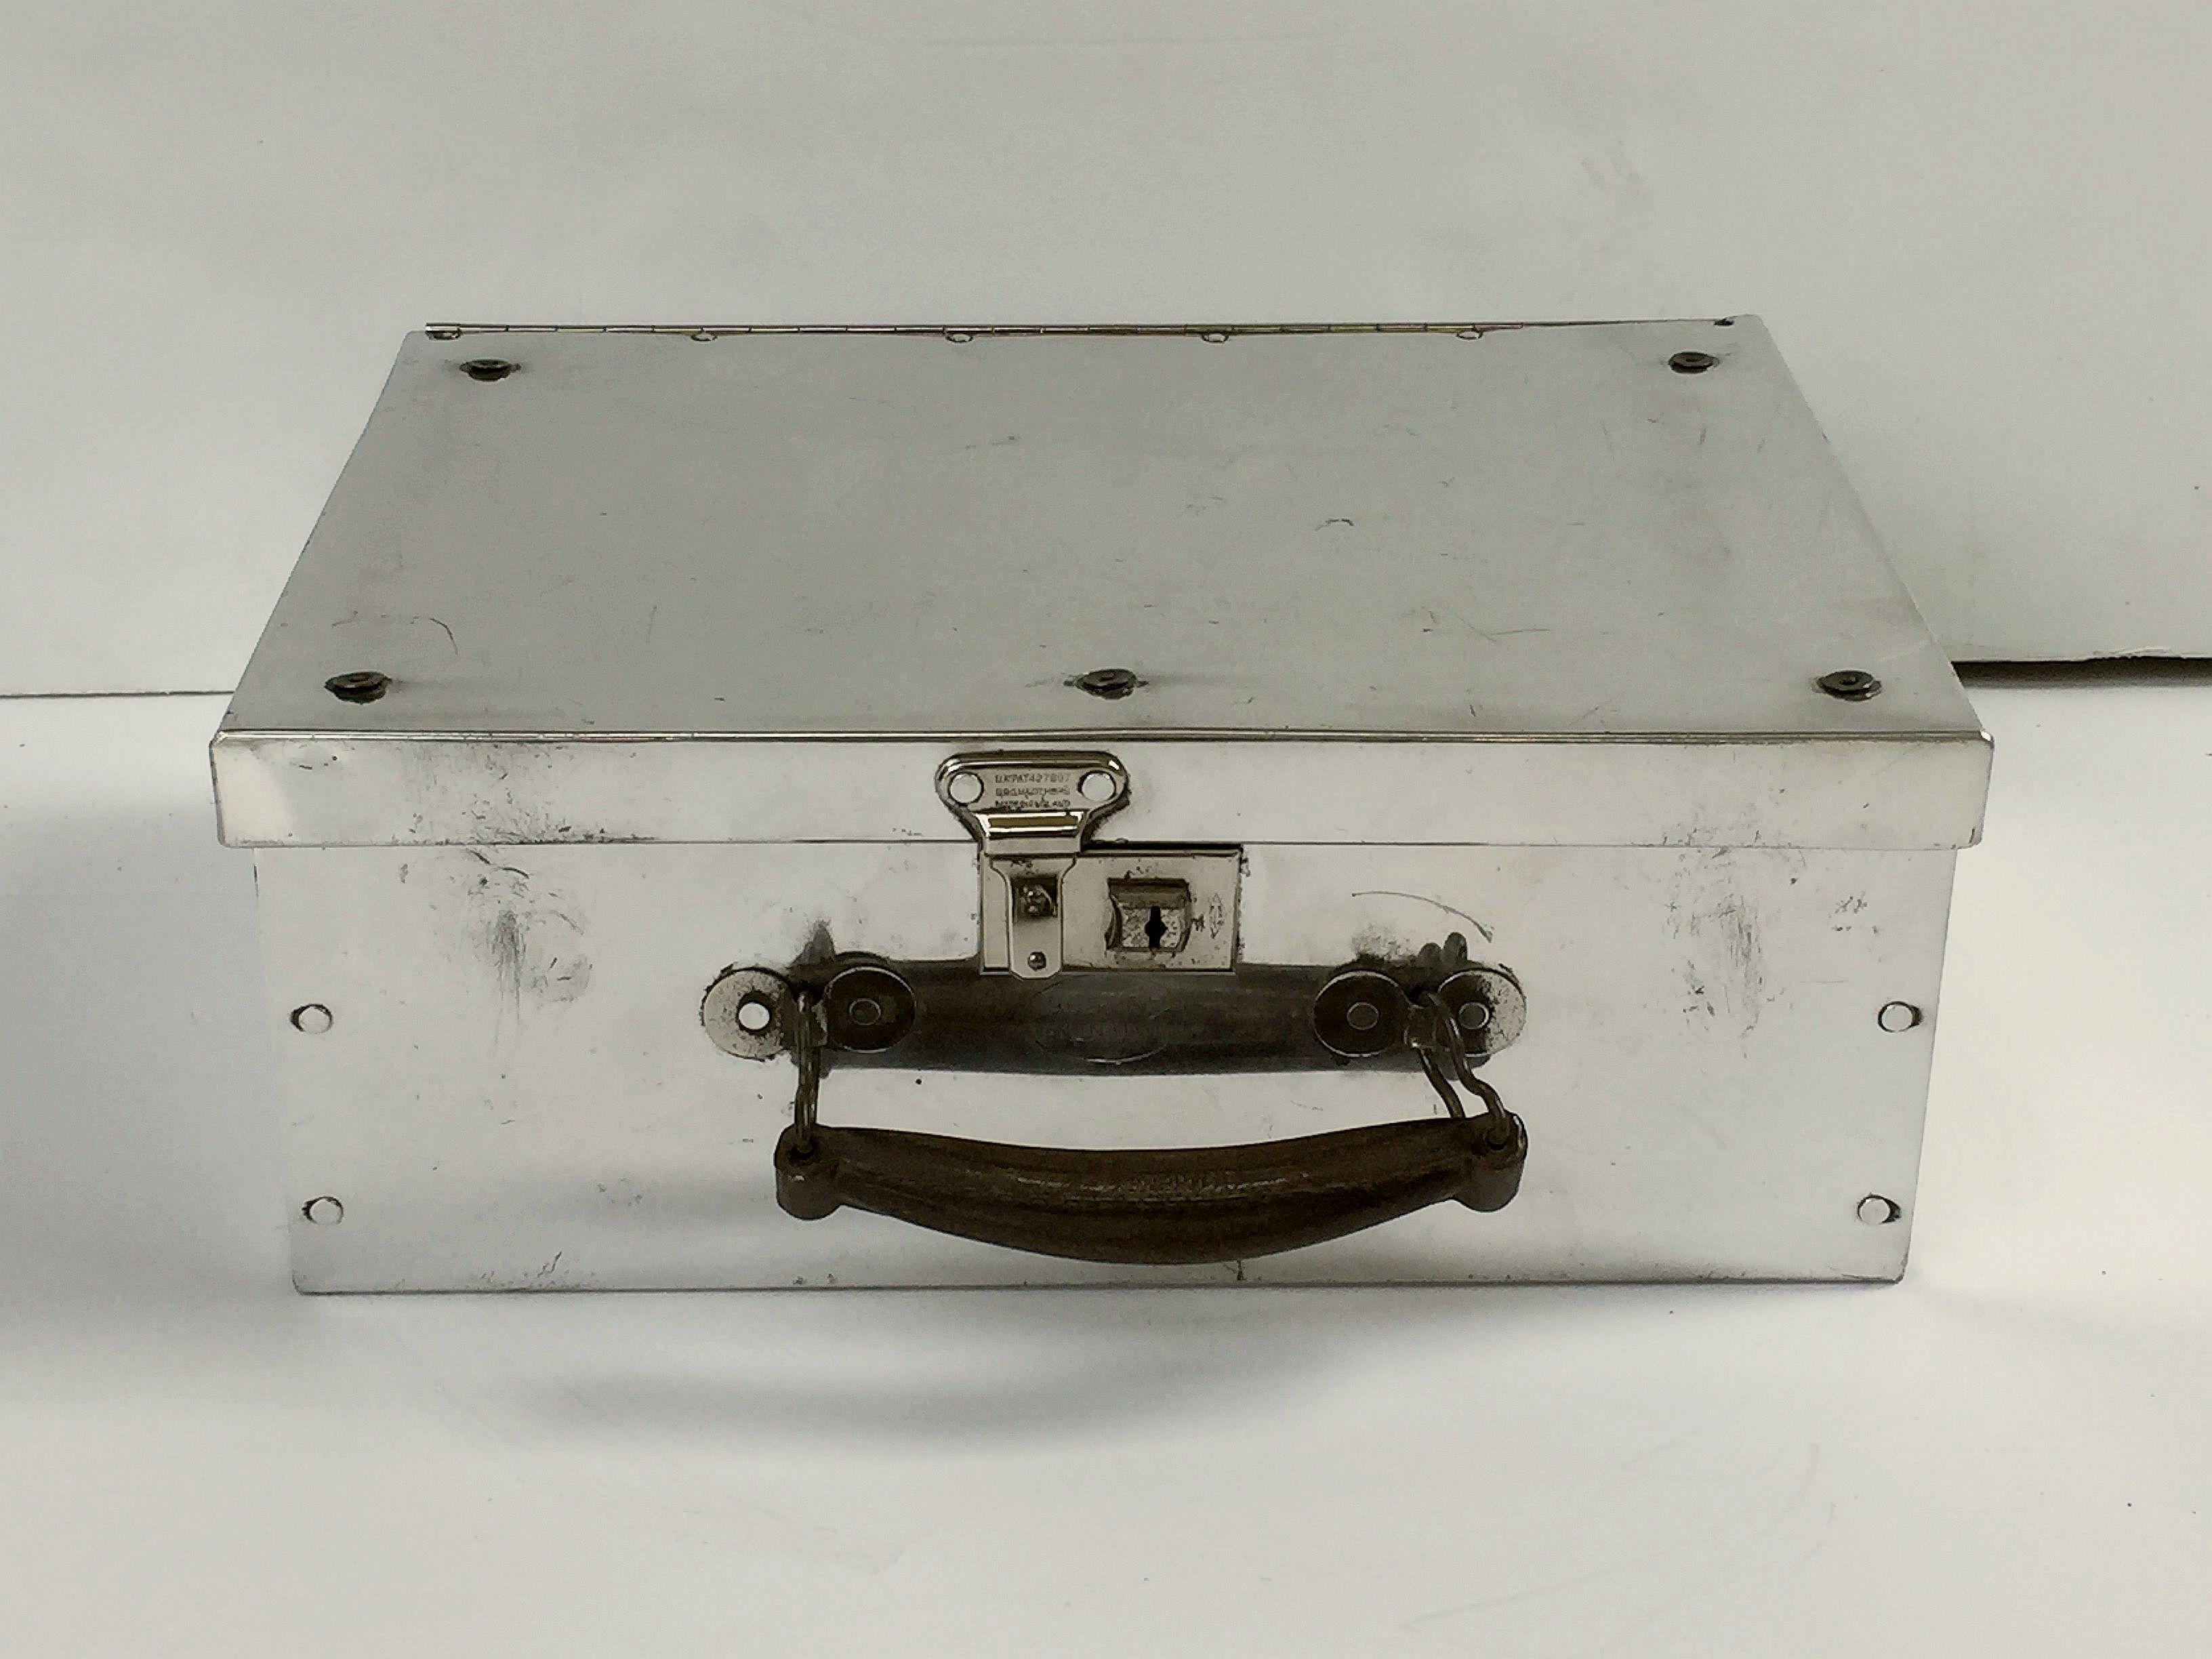 20th Century English Luggage Case or Suitcase of Aluminum